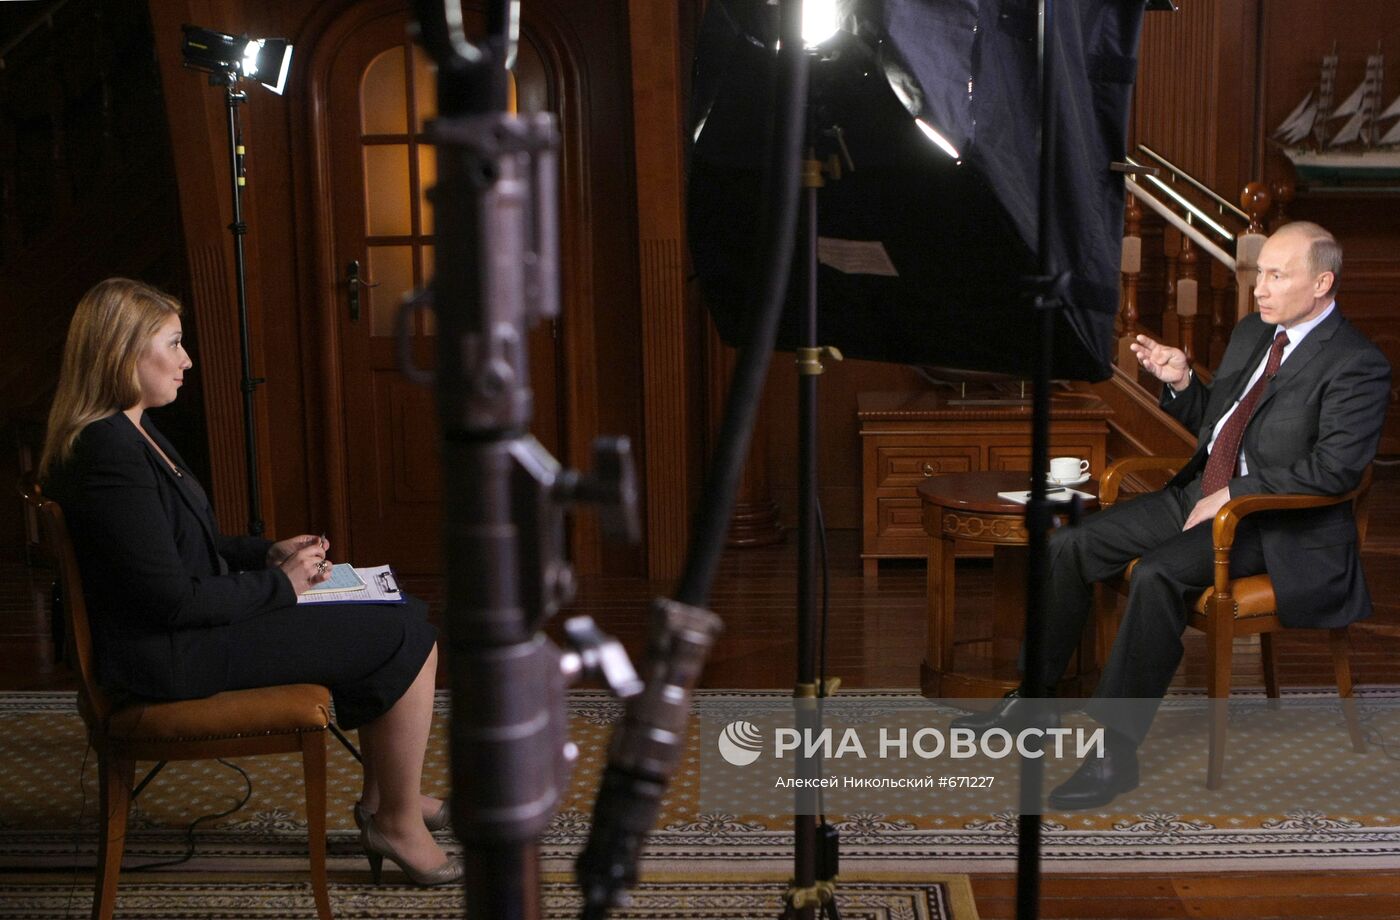 Интервью Владимира Путина телекомпании "Мир"